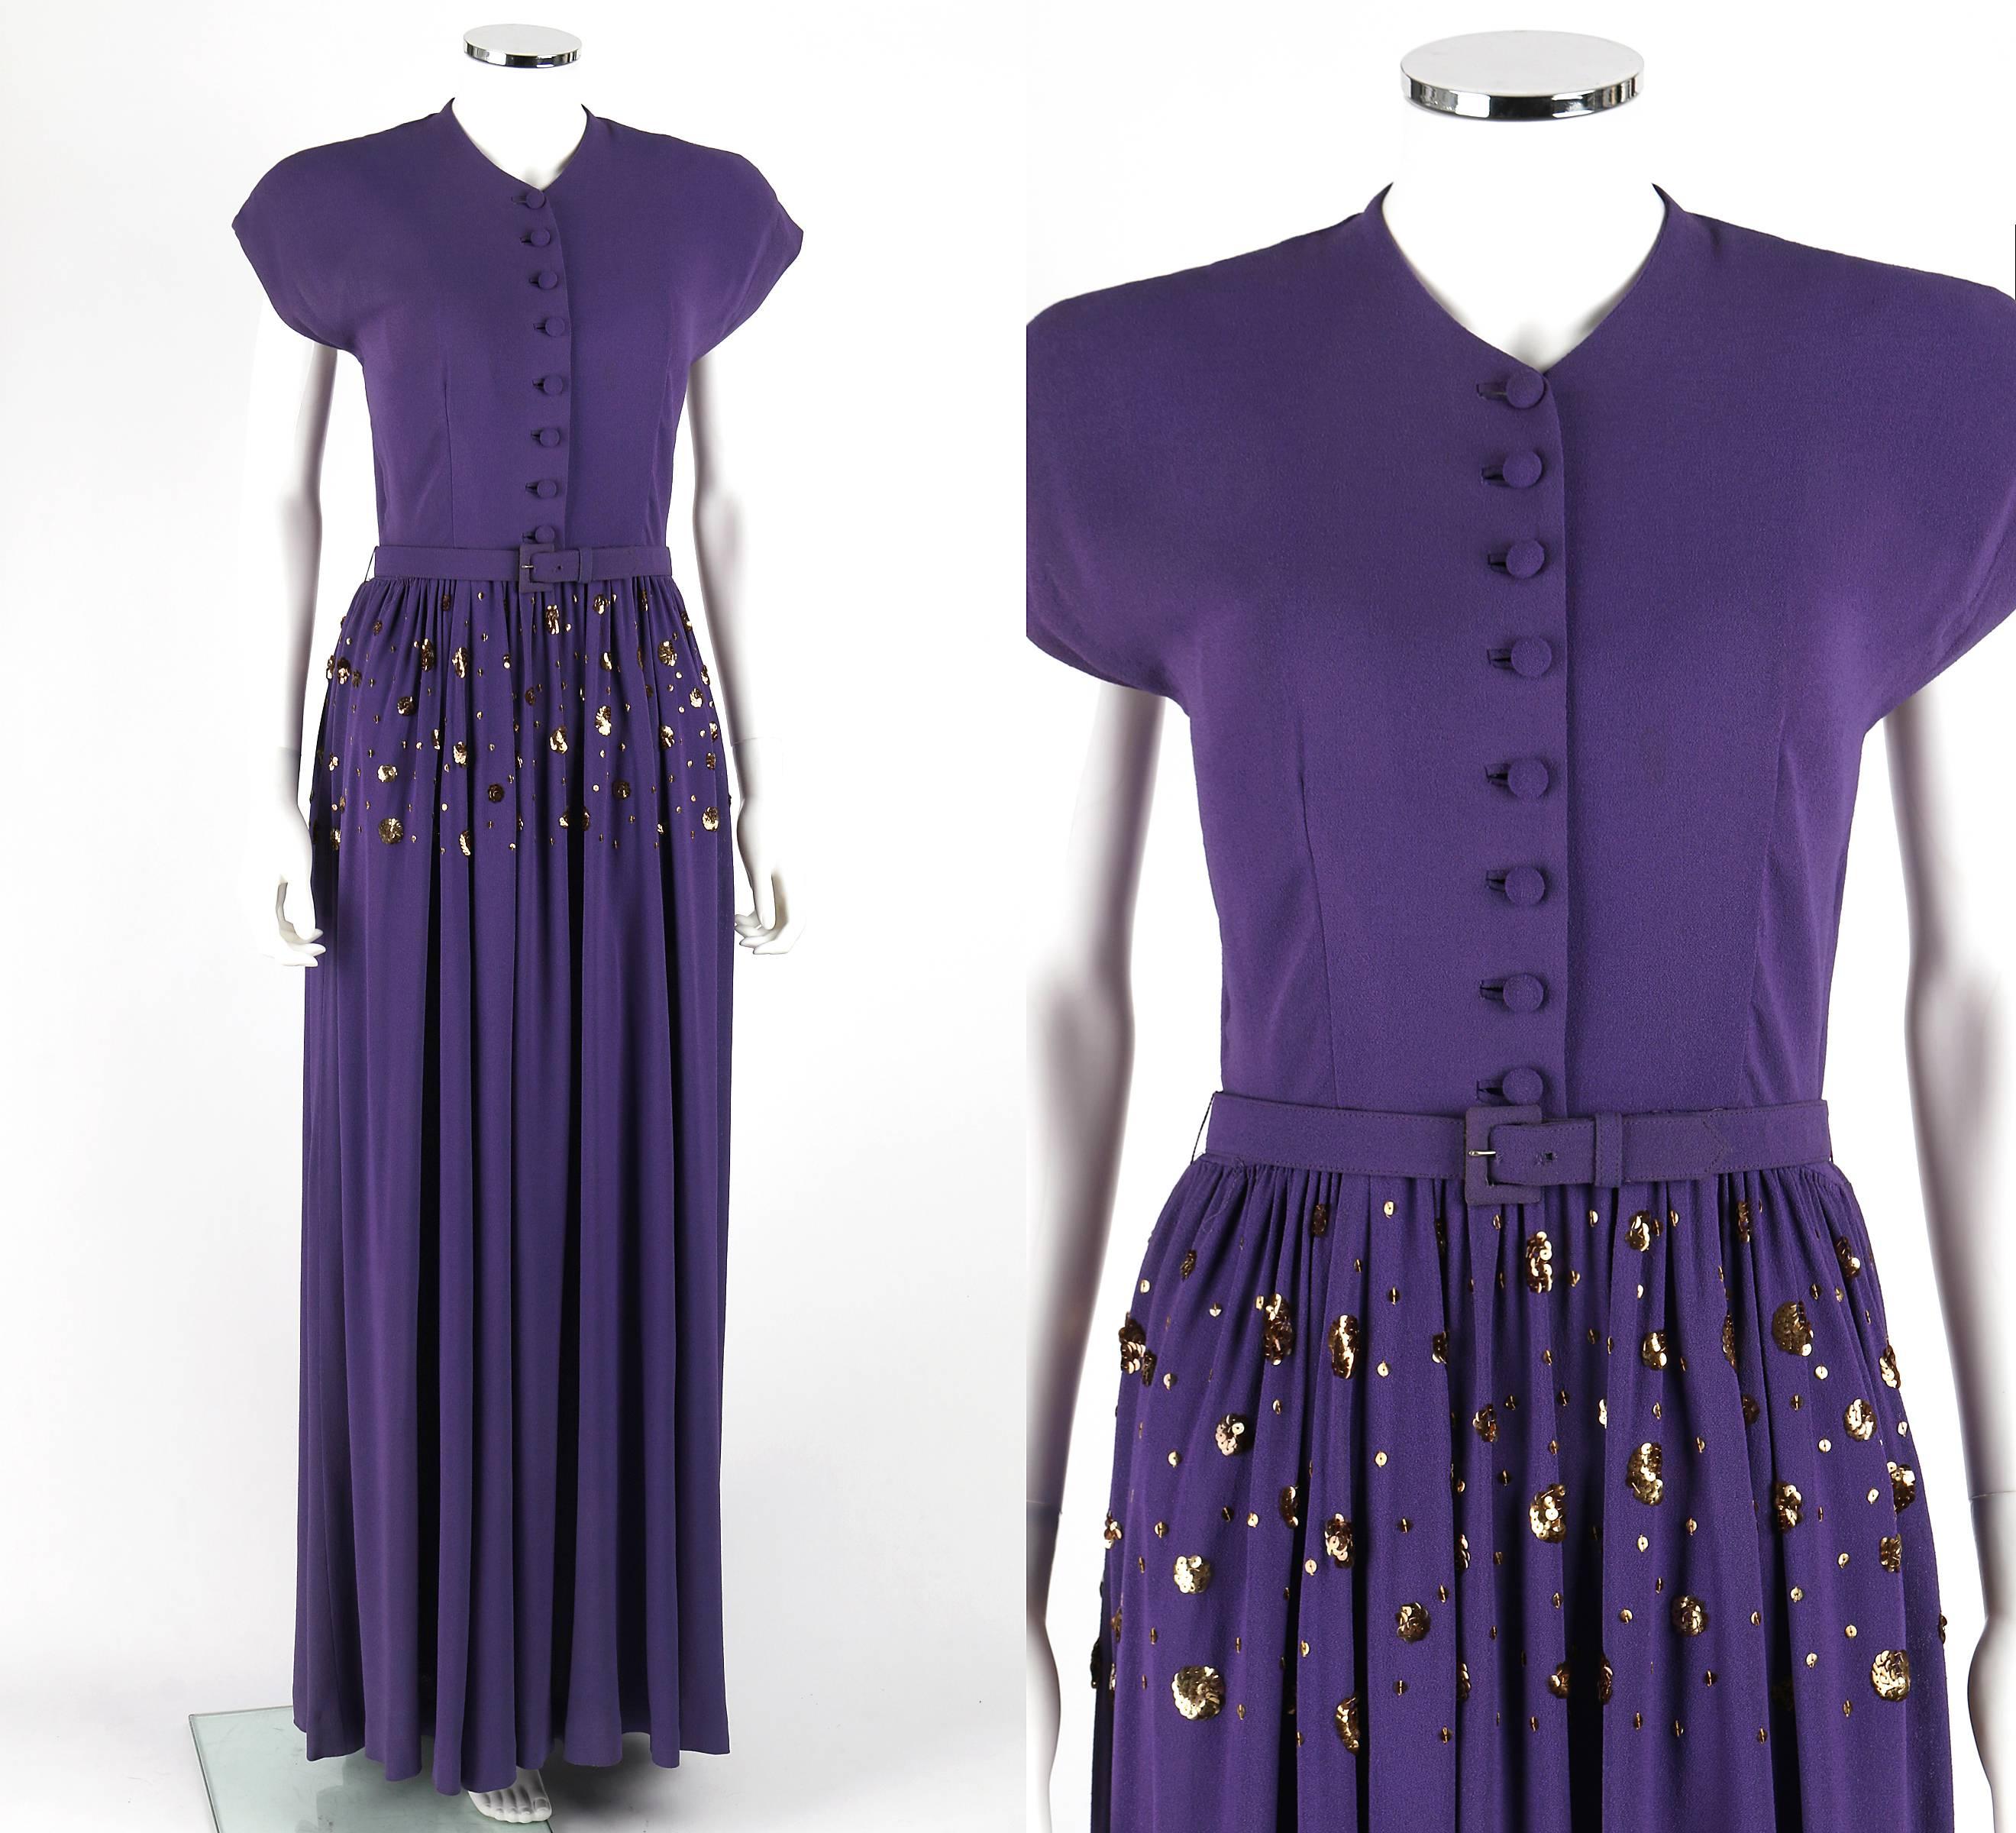 Vintage Couture c.1940's lila Knopf vorne bodenlanges Abendkleid. Verlängerte Schultern. Hoher V-Ausschnitt. Acht verdeckte Kuppelknöpfe in der vorderen Mitte. Goldfarbene Pailletten-Verzierung an der Hüfte. Geraffter Rock. Metallreißverschluss an